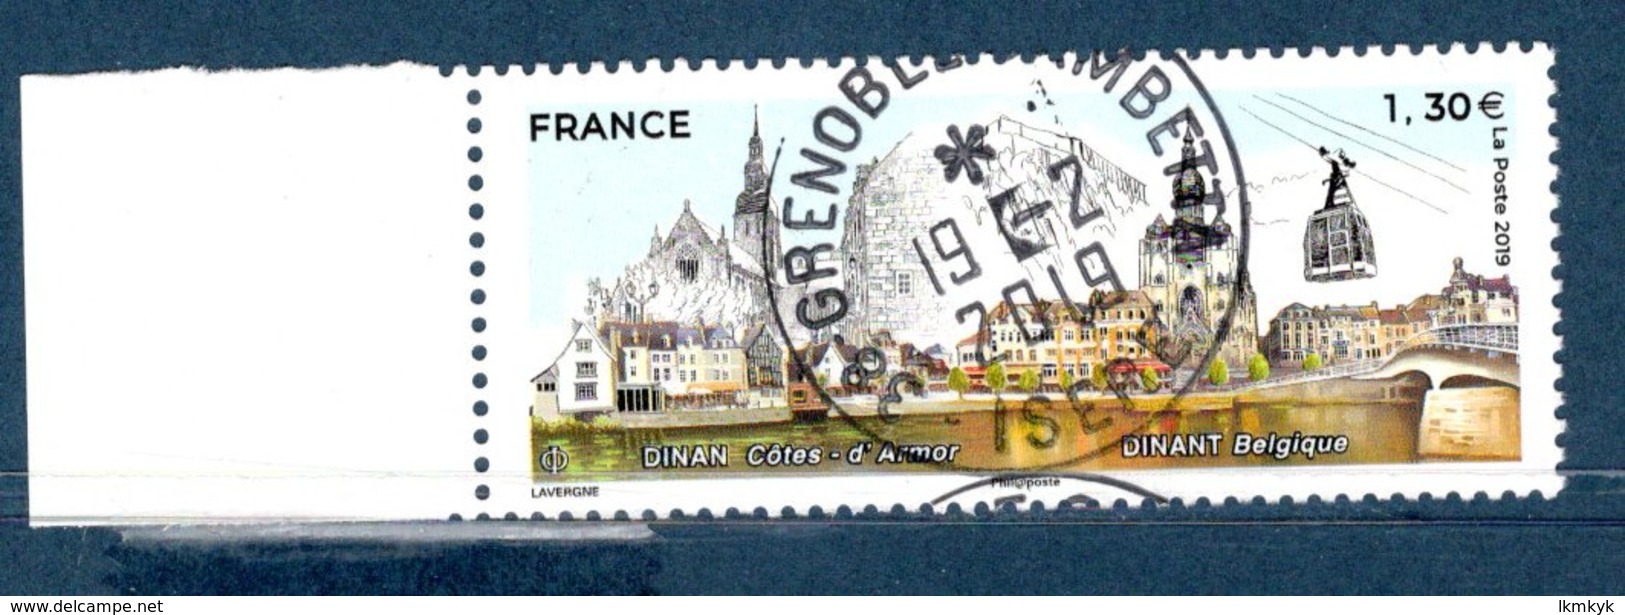 France 2019.Dinan France Et Dinant Belgique.Cachet Rond Gomme D'Origine. - Used Stamps